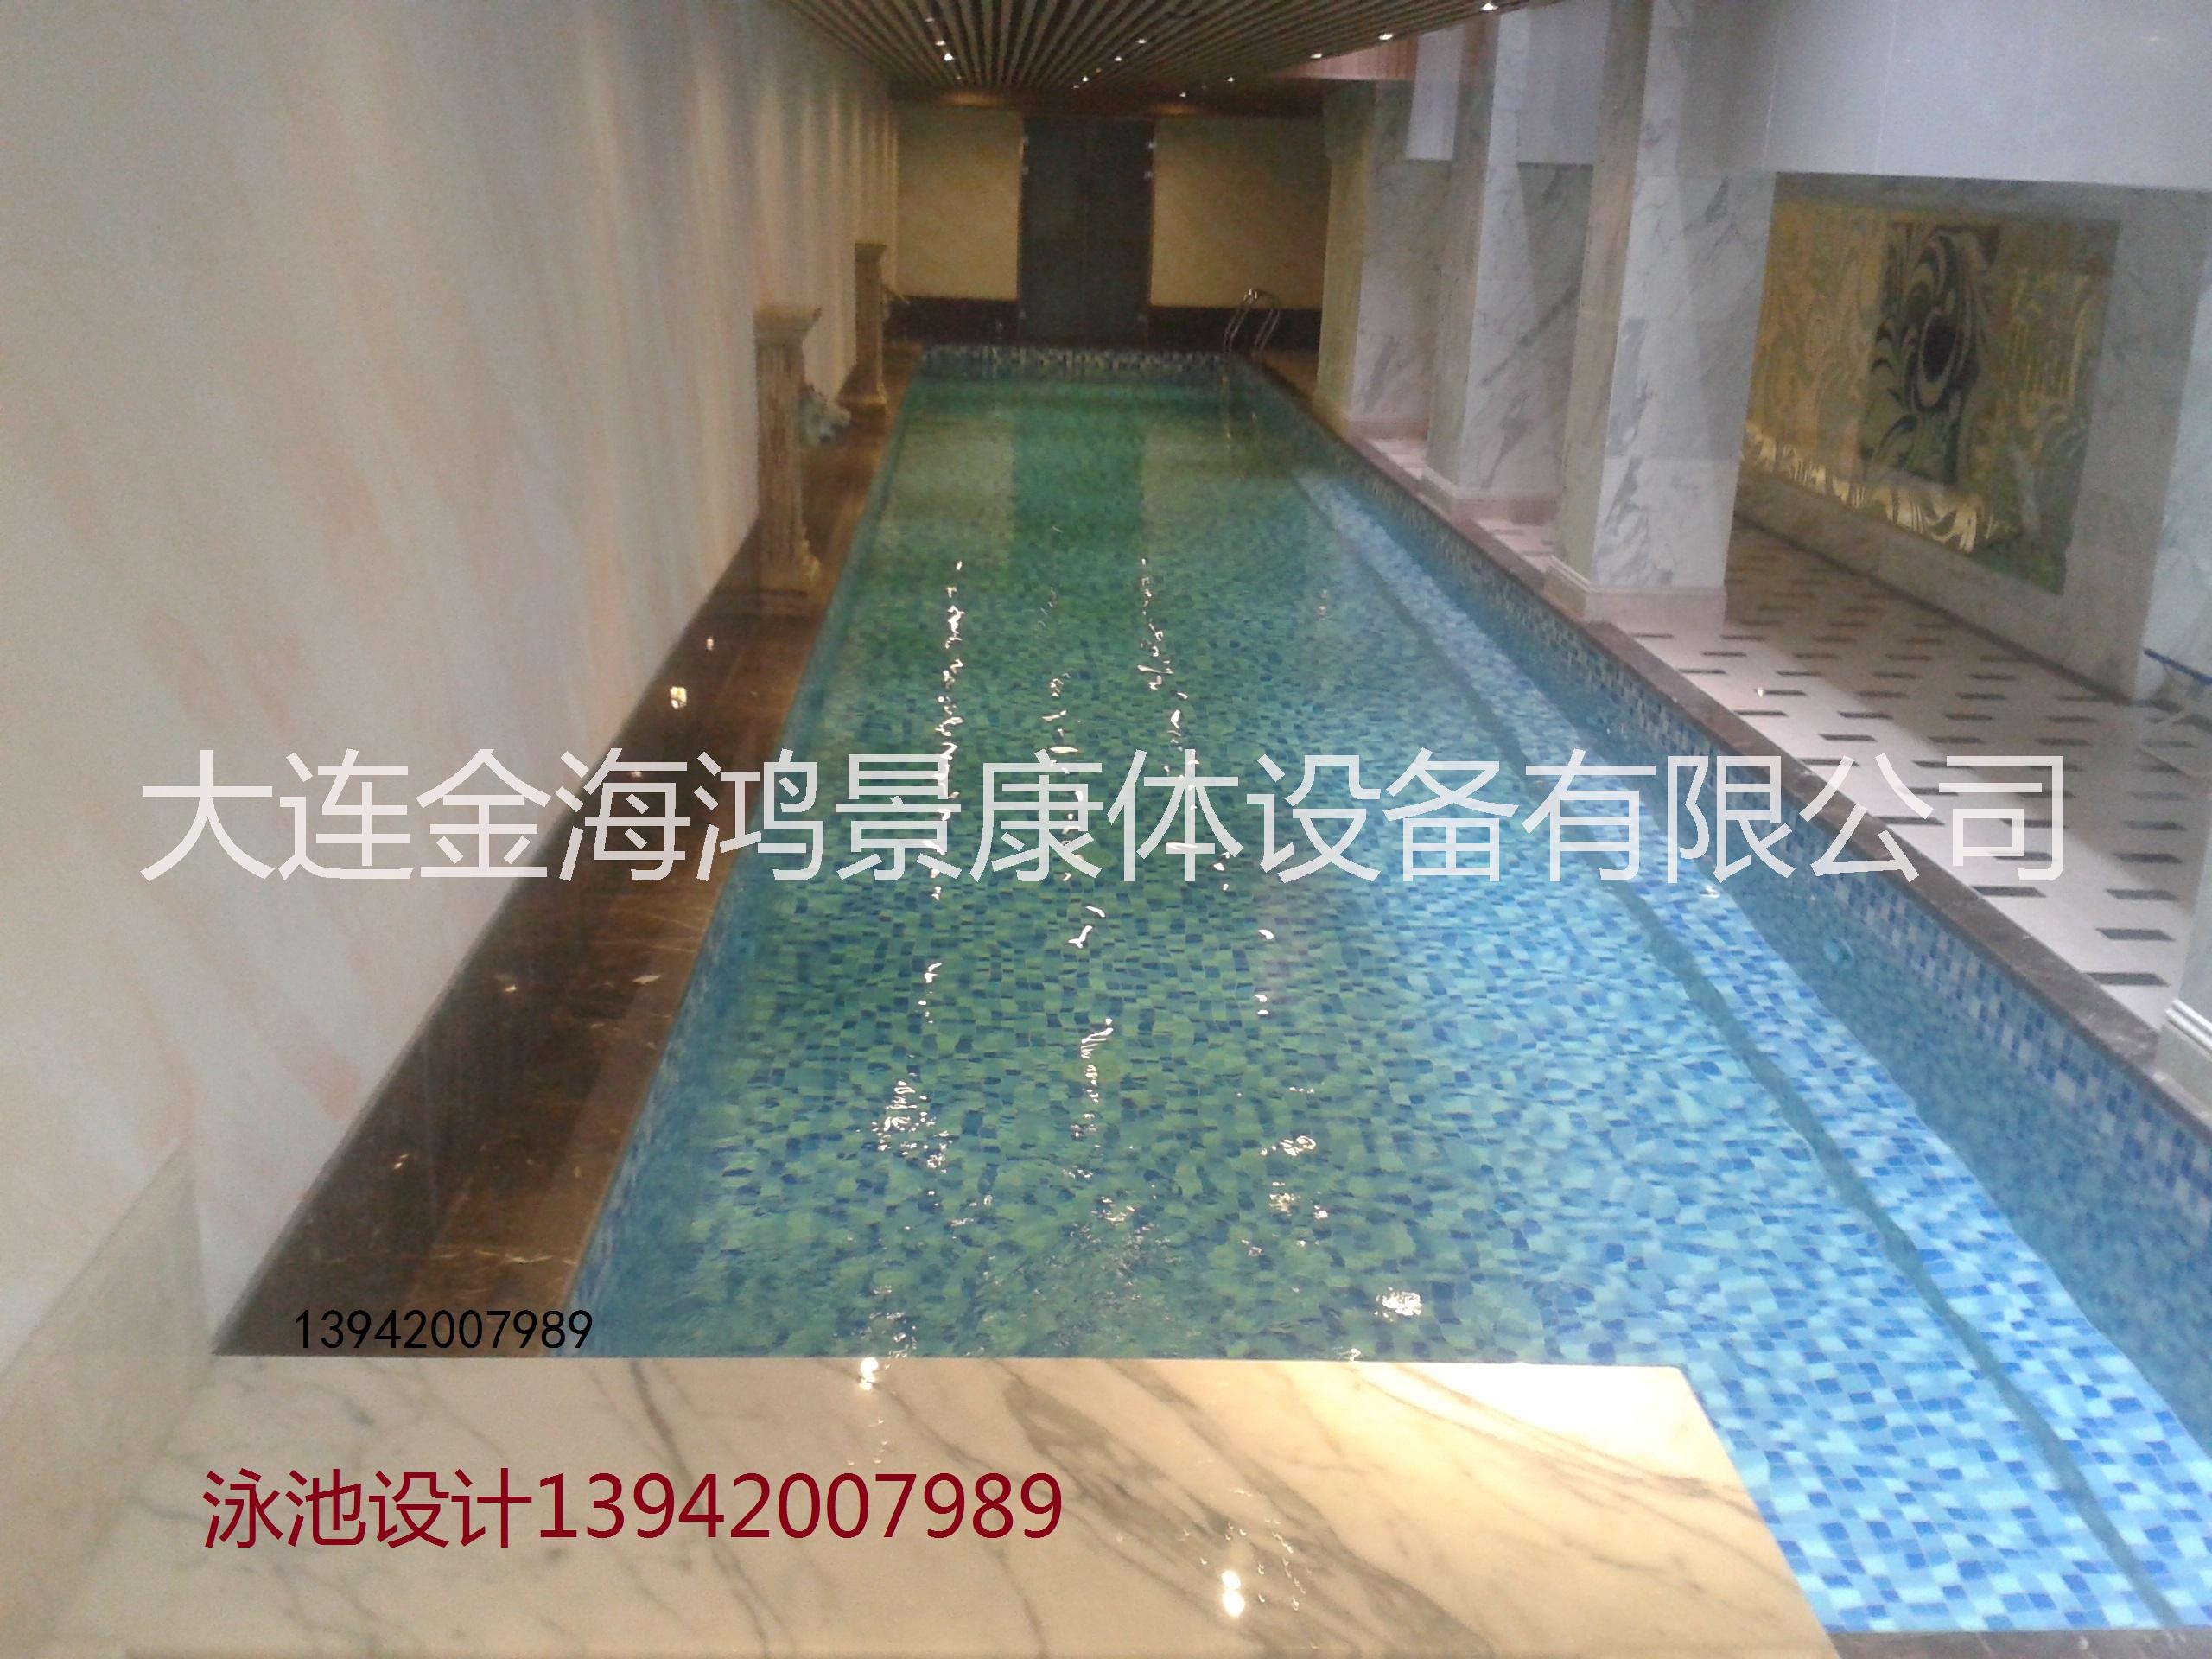 别墅泳池清洁设备13942007989